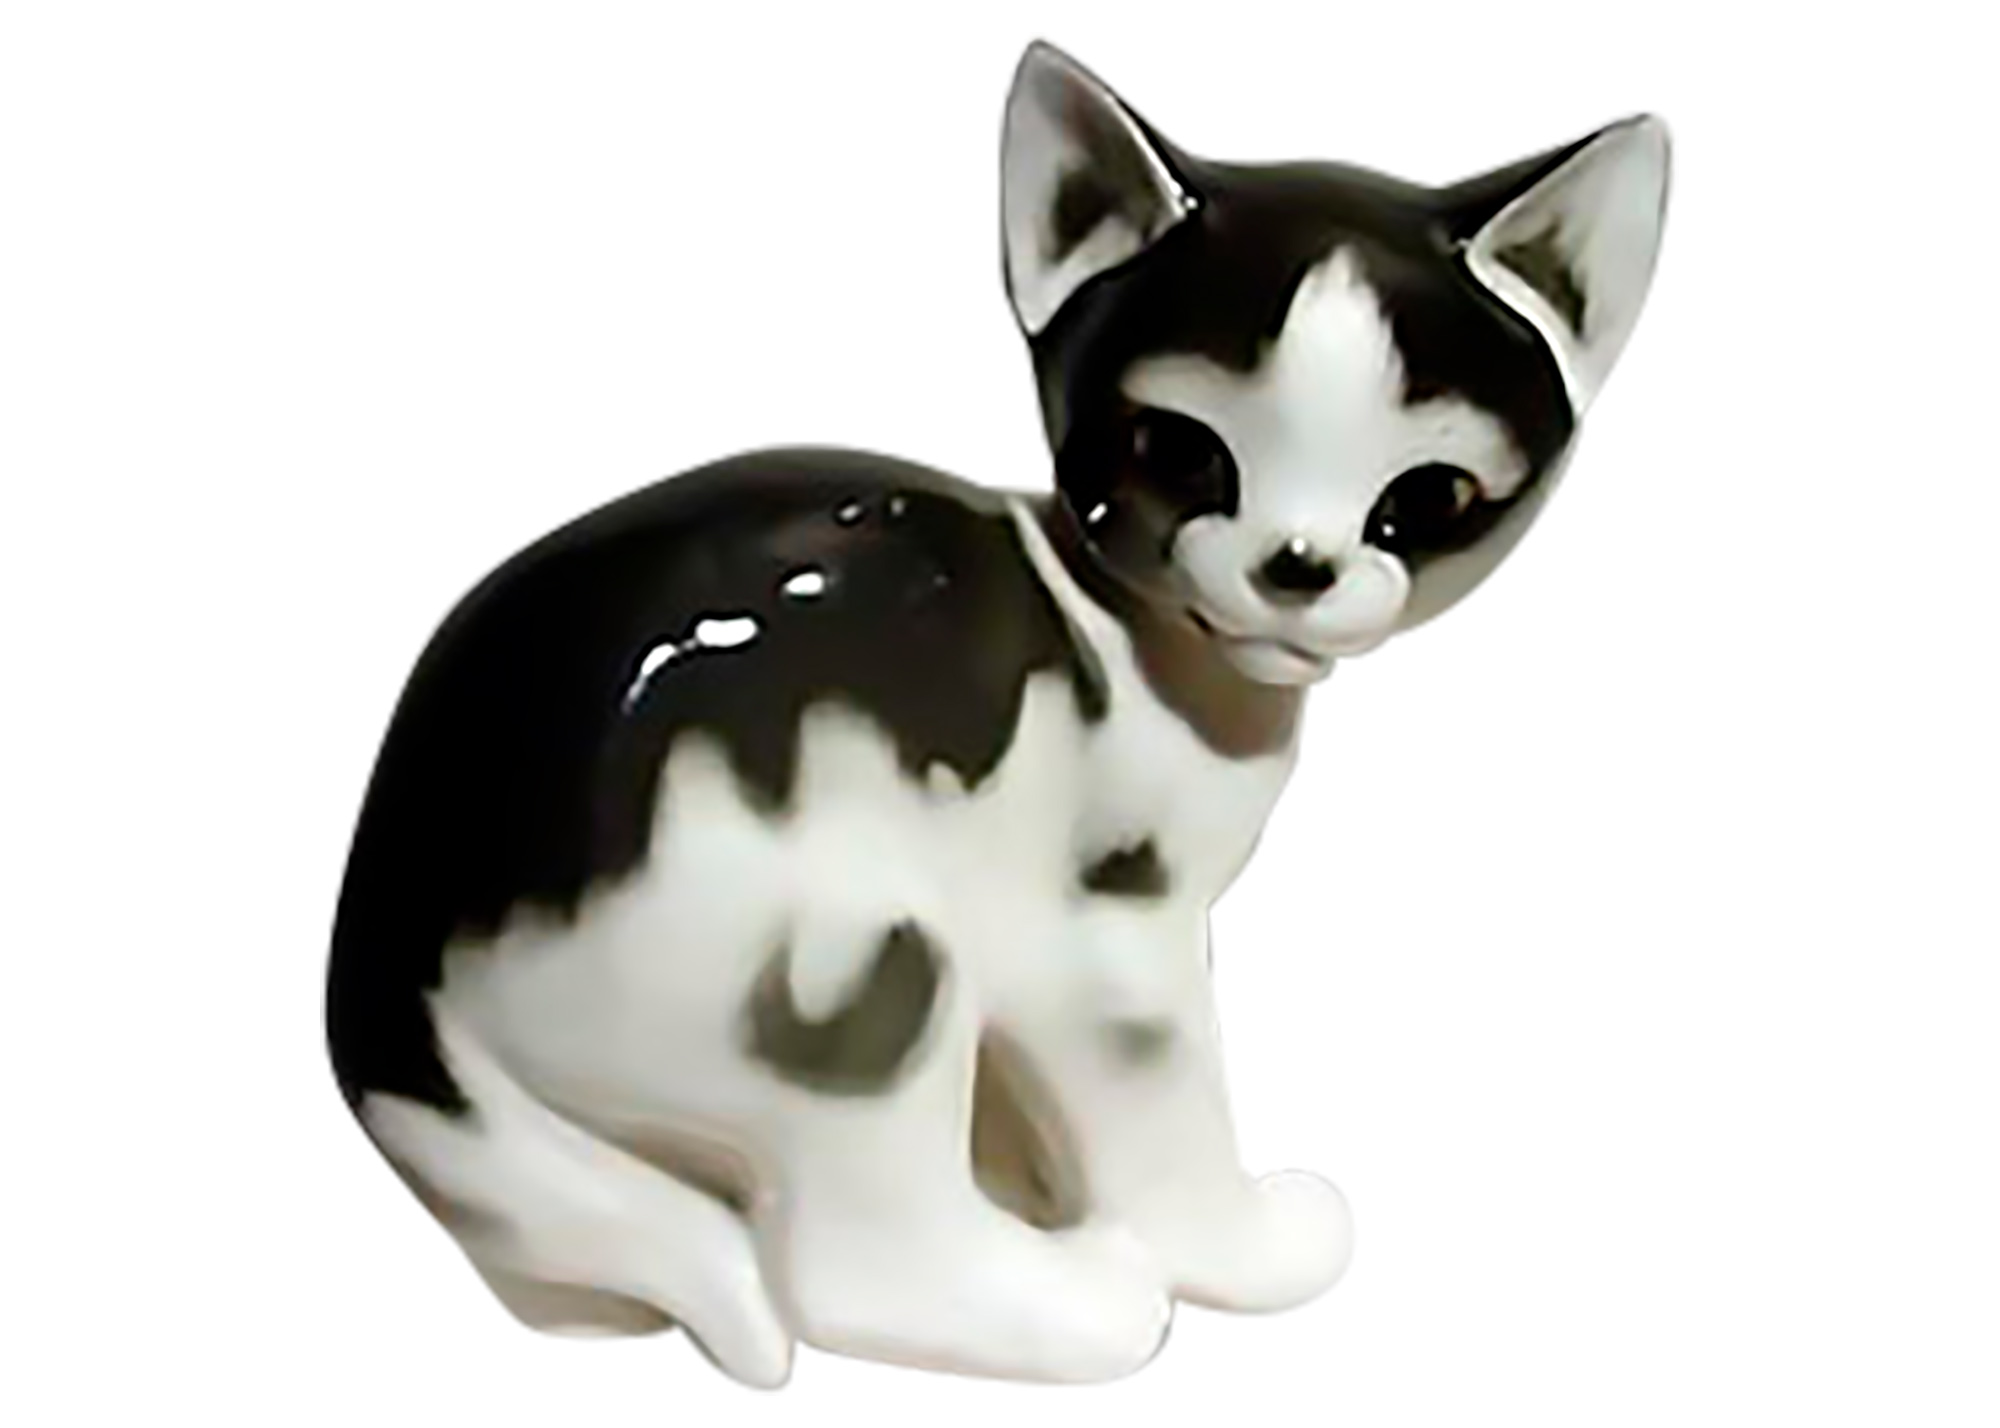 Buy Фарфоровая статуэтка "Кошка черно-белая" at GoldenCockerel.com